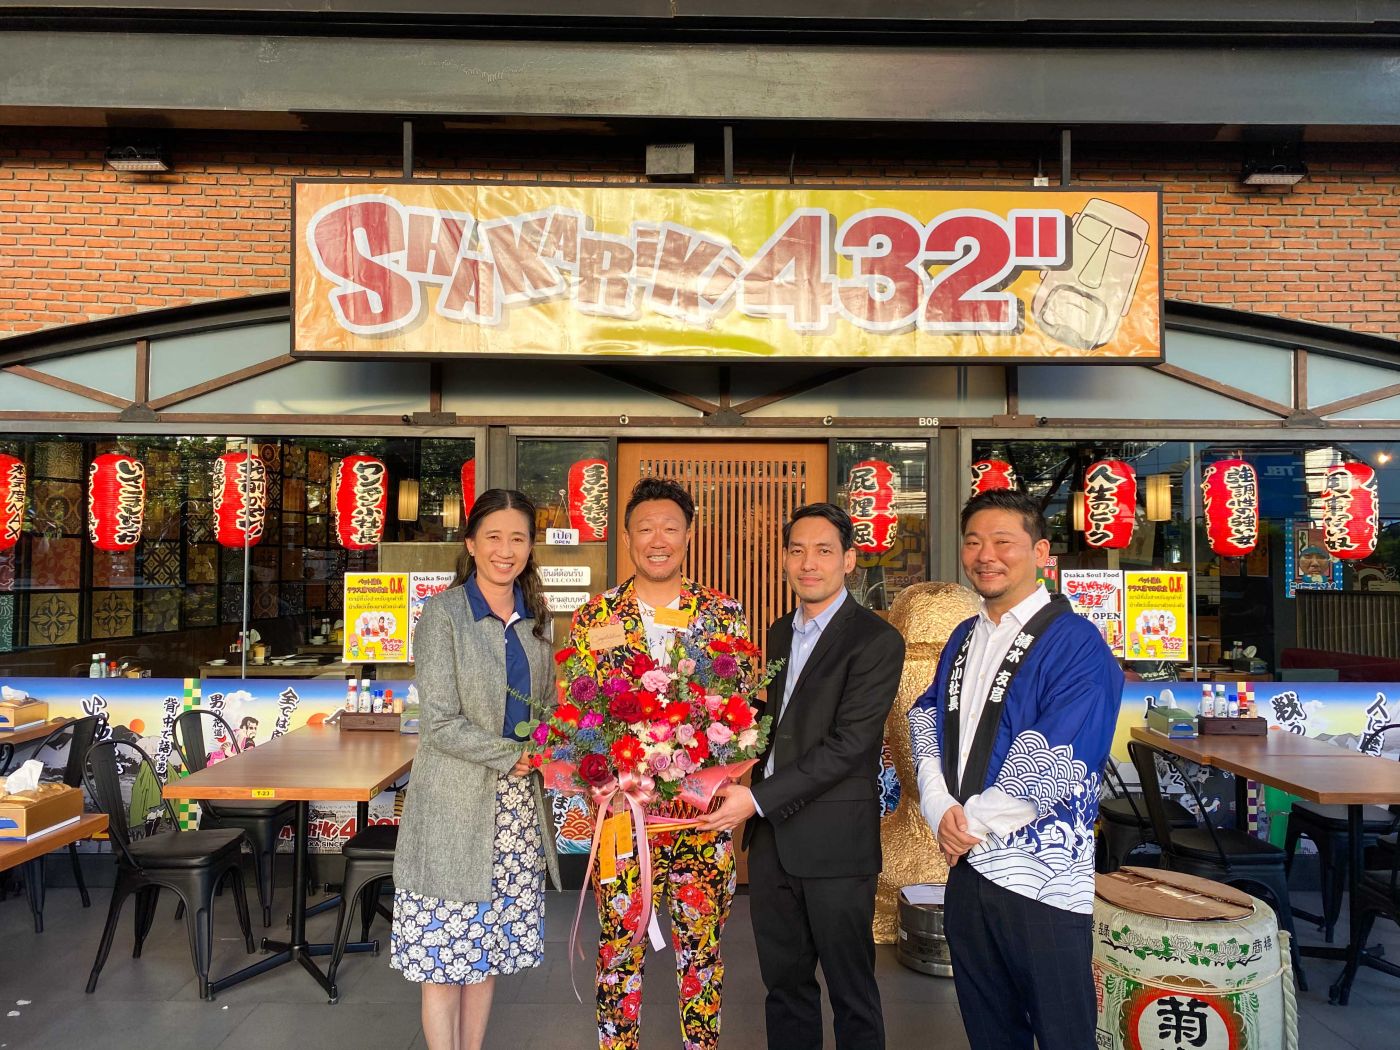 เดอะ สตรีท รัชดา ร่วมแสดงความยินดีในโอกาสเปิดร้าน Shakariki 432